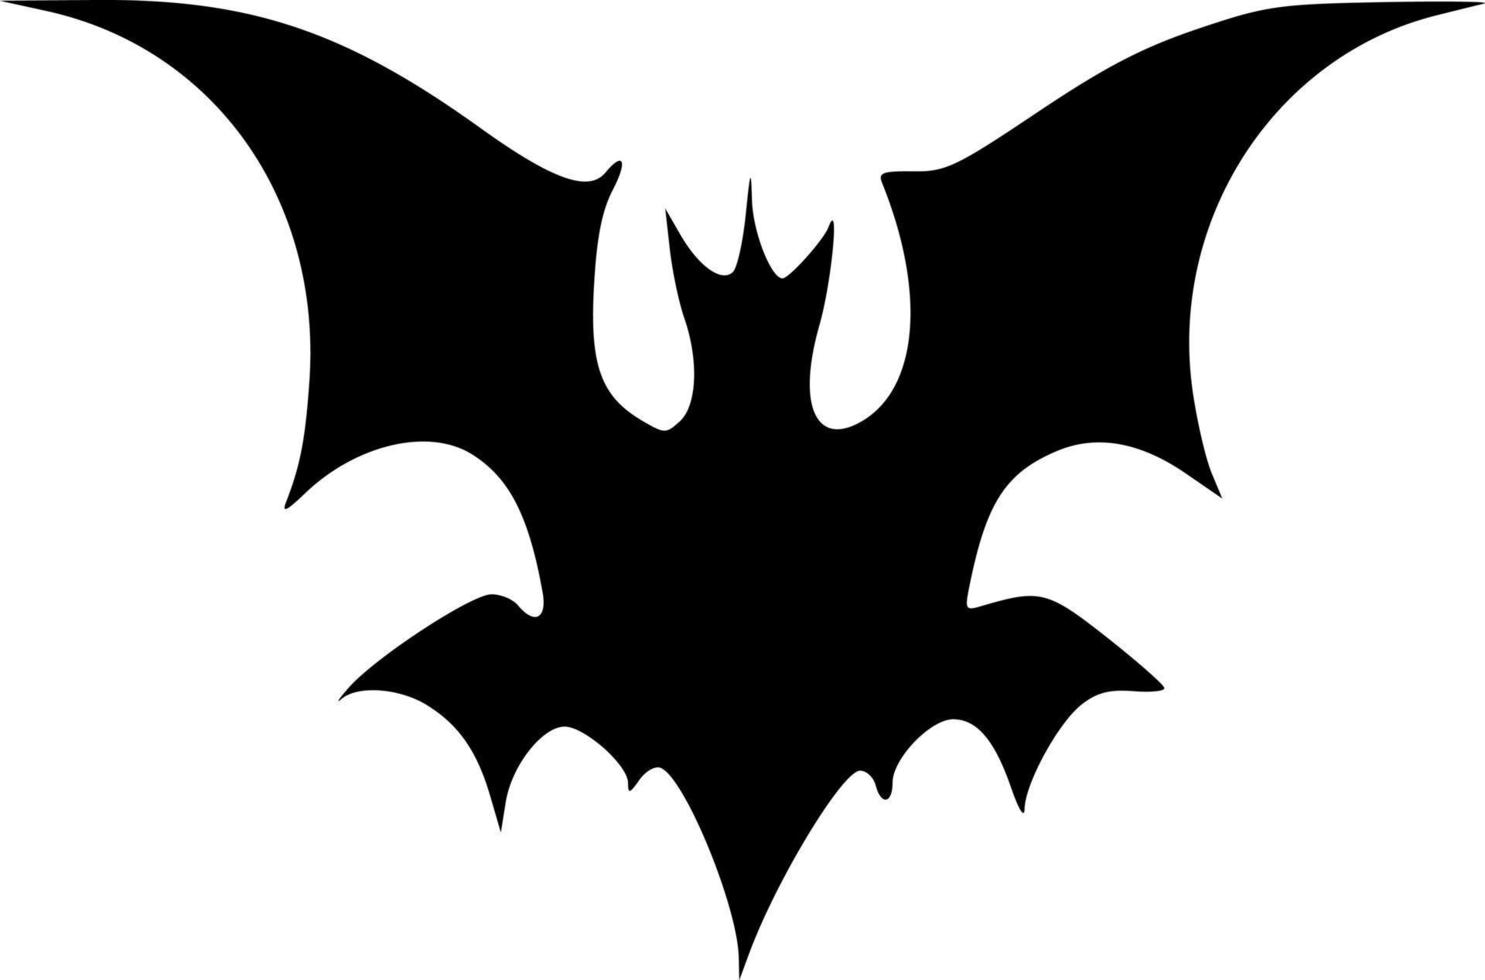 blanco y negro de forma de murciélago malvado vector